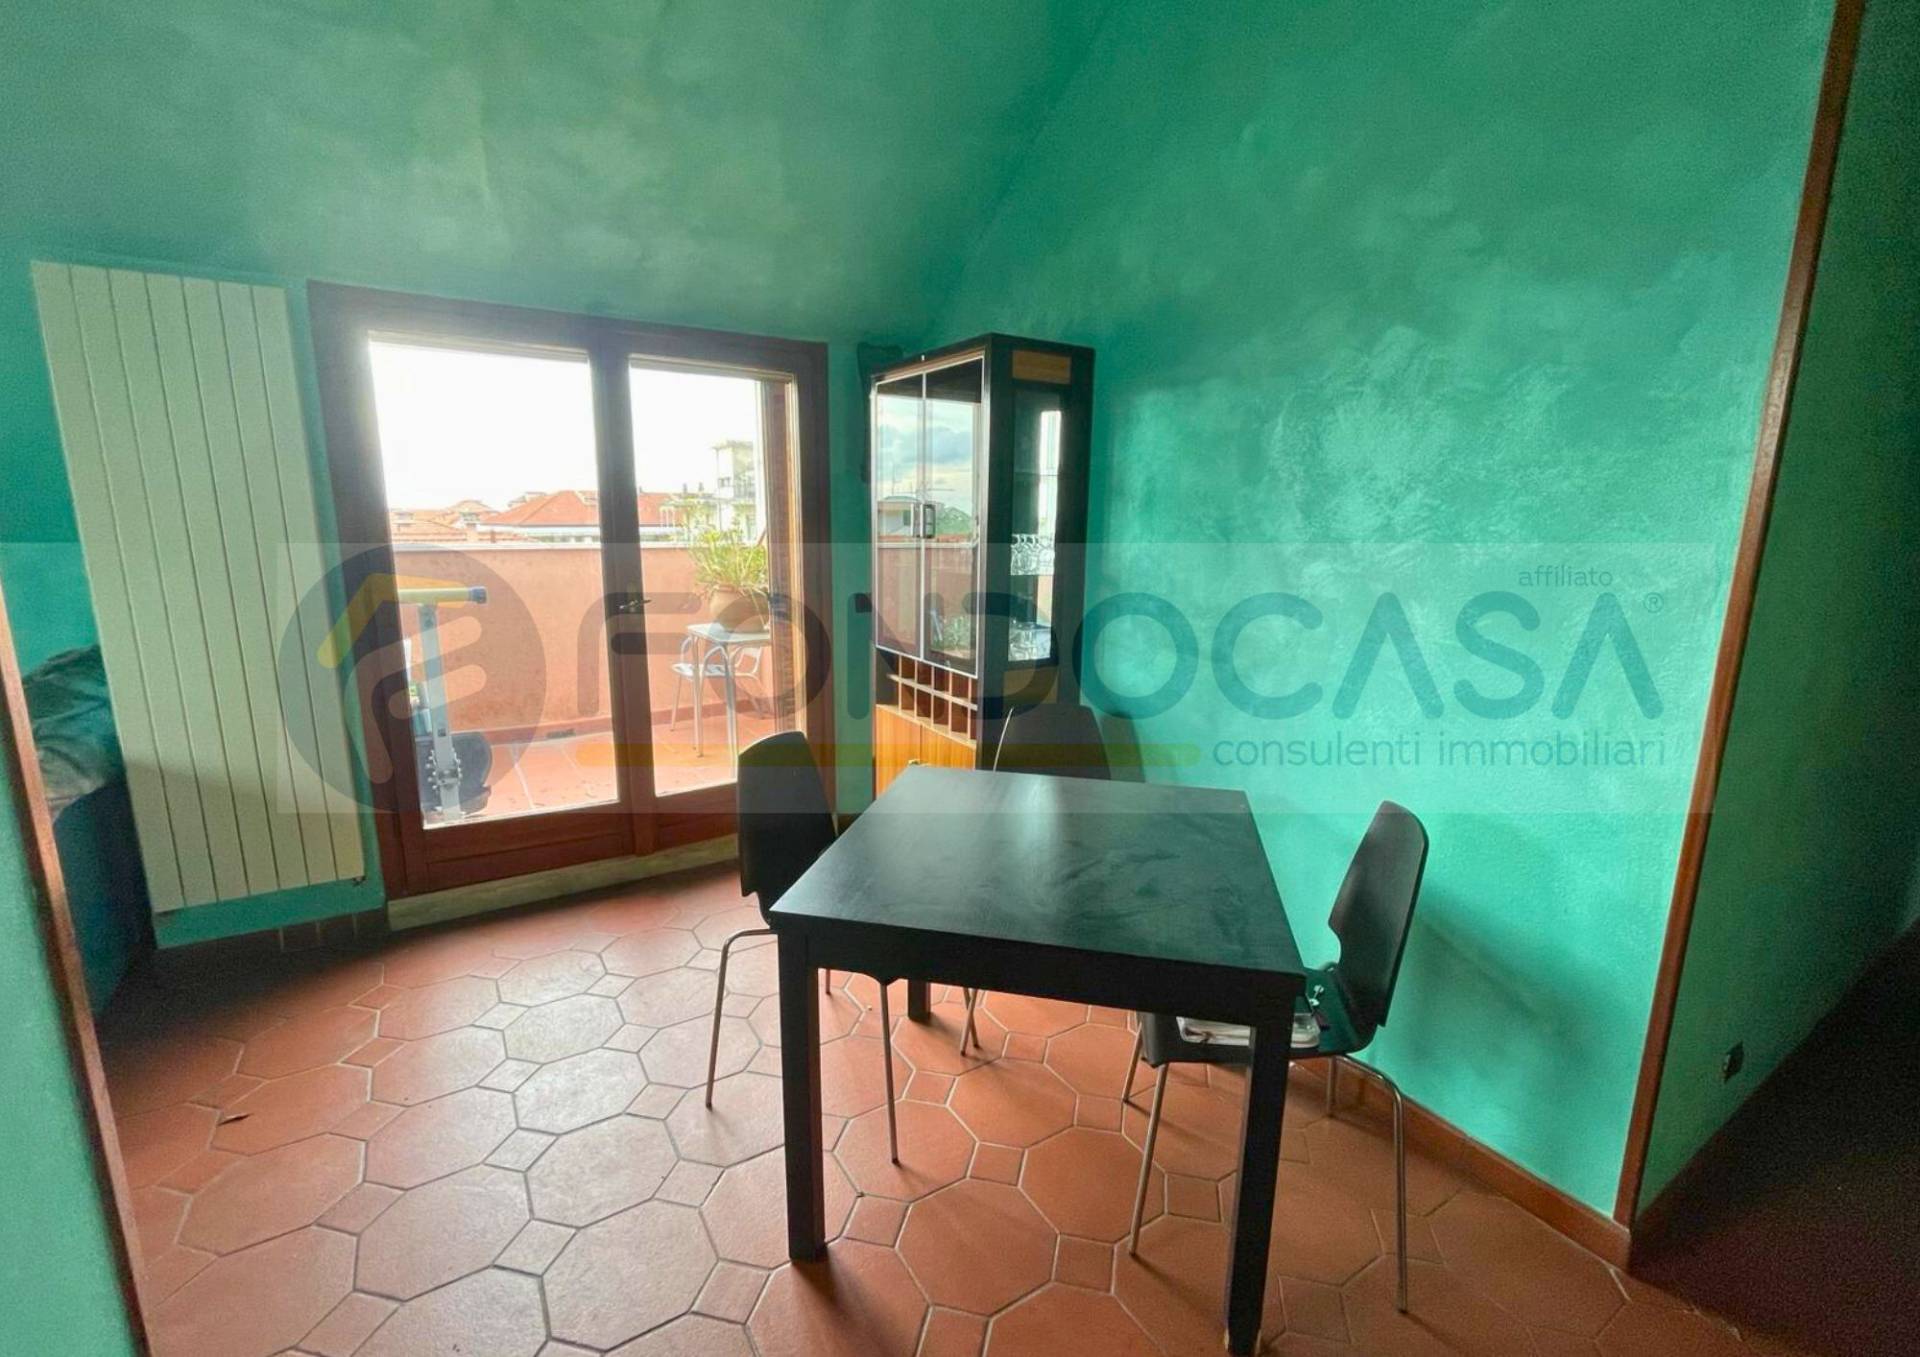 Appartamento in vendita a Ventimiglia, 4 locali, prezzo € 198.000 | PortaleAgenzieImmobiliari.it